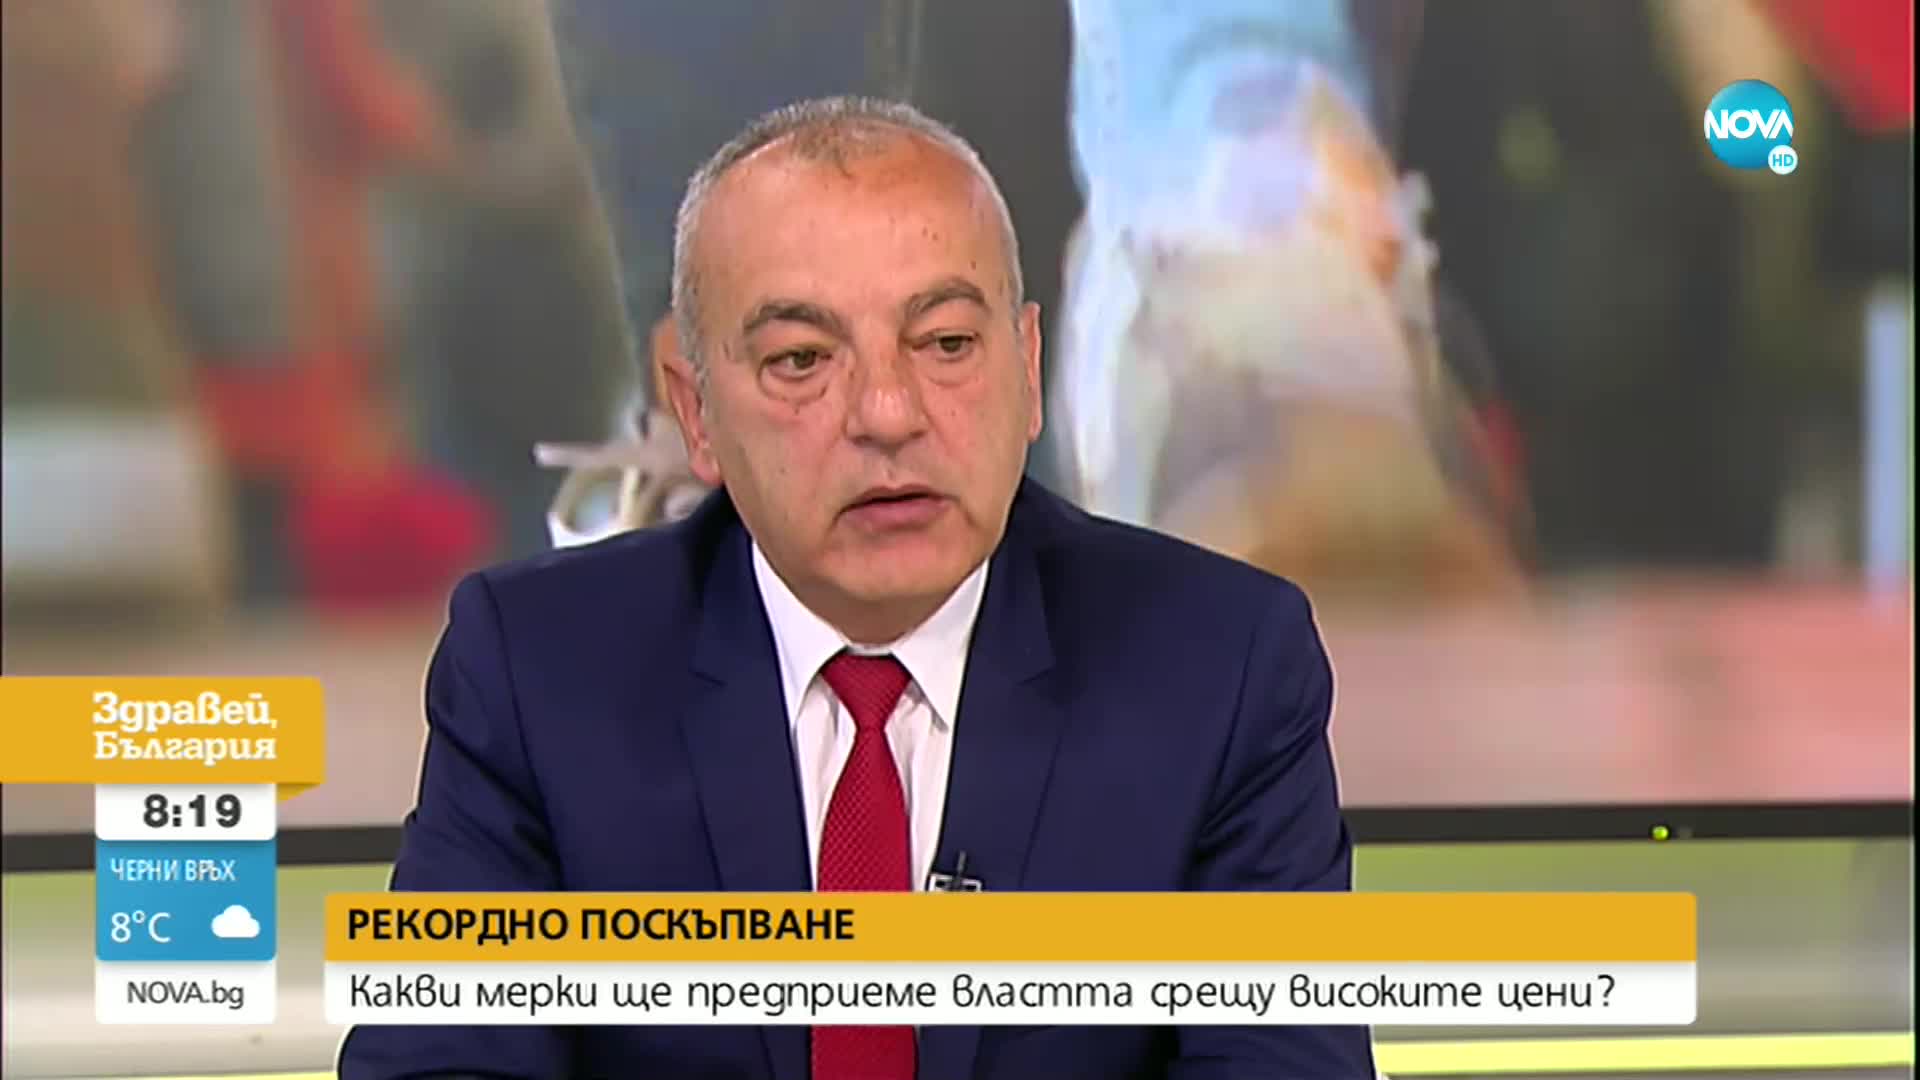 Гълъб Донев: Ще има увеличение на минималната работна заплата